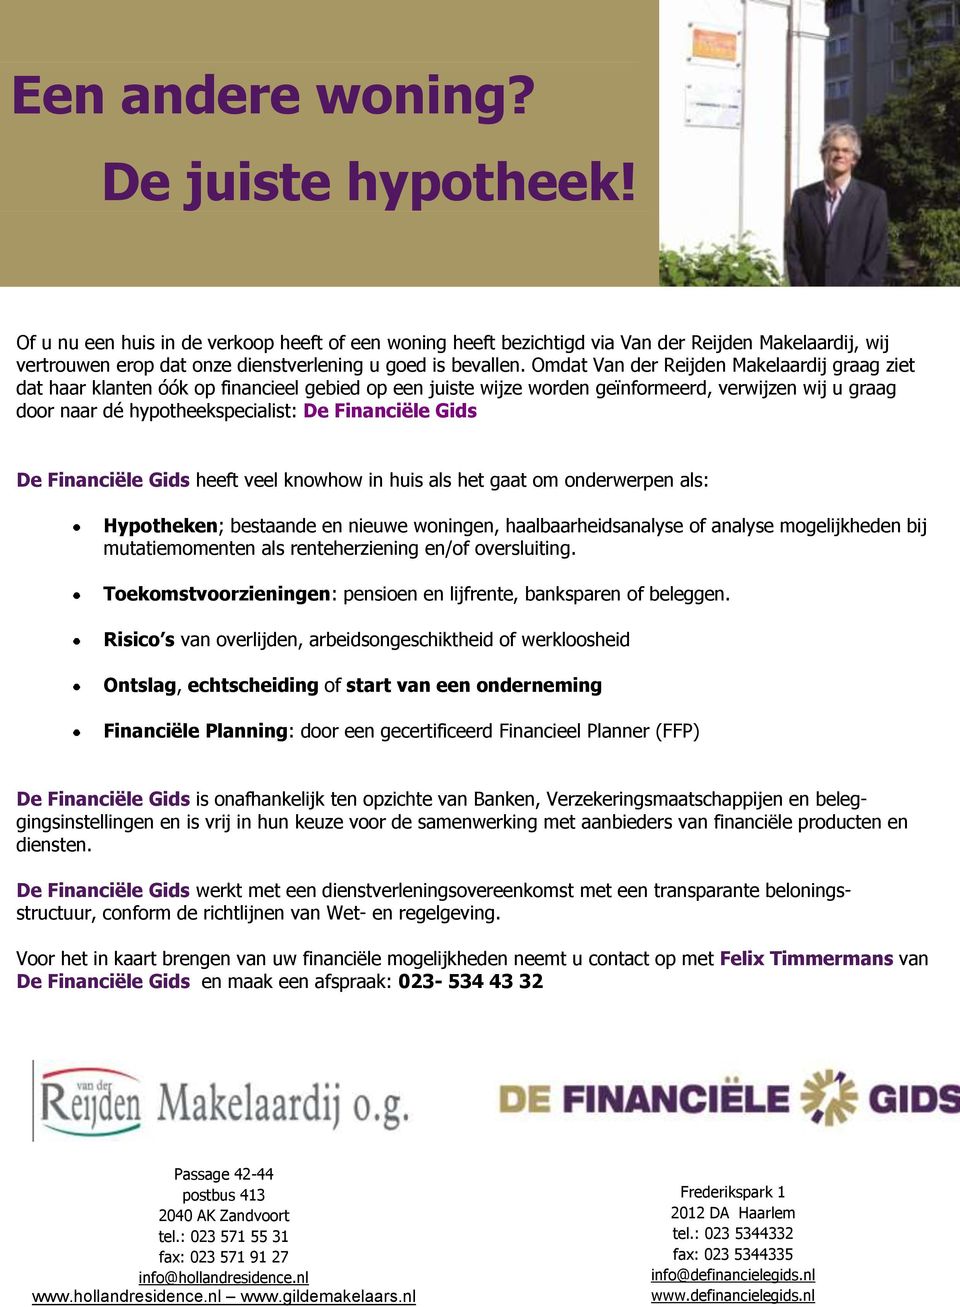 Omdat Van der Reijden Makelaardij graag ziet dat haar klanten óók op financieel gebied op een juiste wijze worden geïnformeerd, verwijzen wij u graag door naar dé hypotheekspecialist: De Financiële